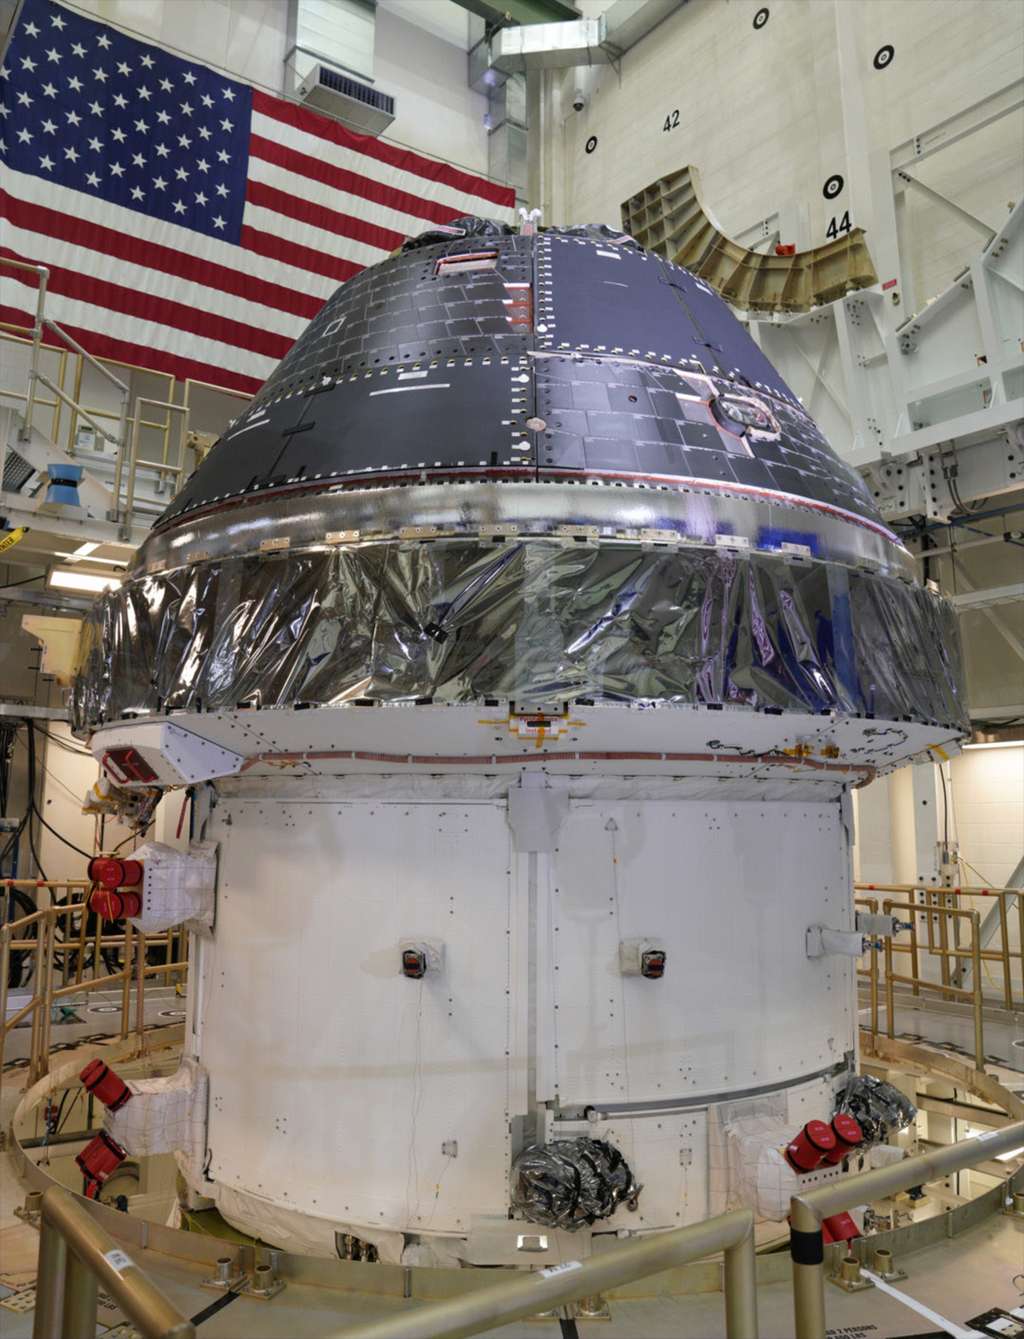 Le véhicule spatial Orion de la Nasa, construit par Lockheed Martin. La capsule est ici vue intégrée à son module de service fourni par l'ESA et construit par Airbus. À la différence du véhicule Apollo des années 60 et 70 — composé d’un module lunaire (LM) et d’un module de commande et de service (CSM) — cantonné à des allers-retours Terre-Lune, le véhicule Orion servira à voyager au-delà de la Lune. Il a été conçu pour des vols de longues durées à destination de Mars ou d’un astéroïde. © Lockheed Martin